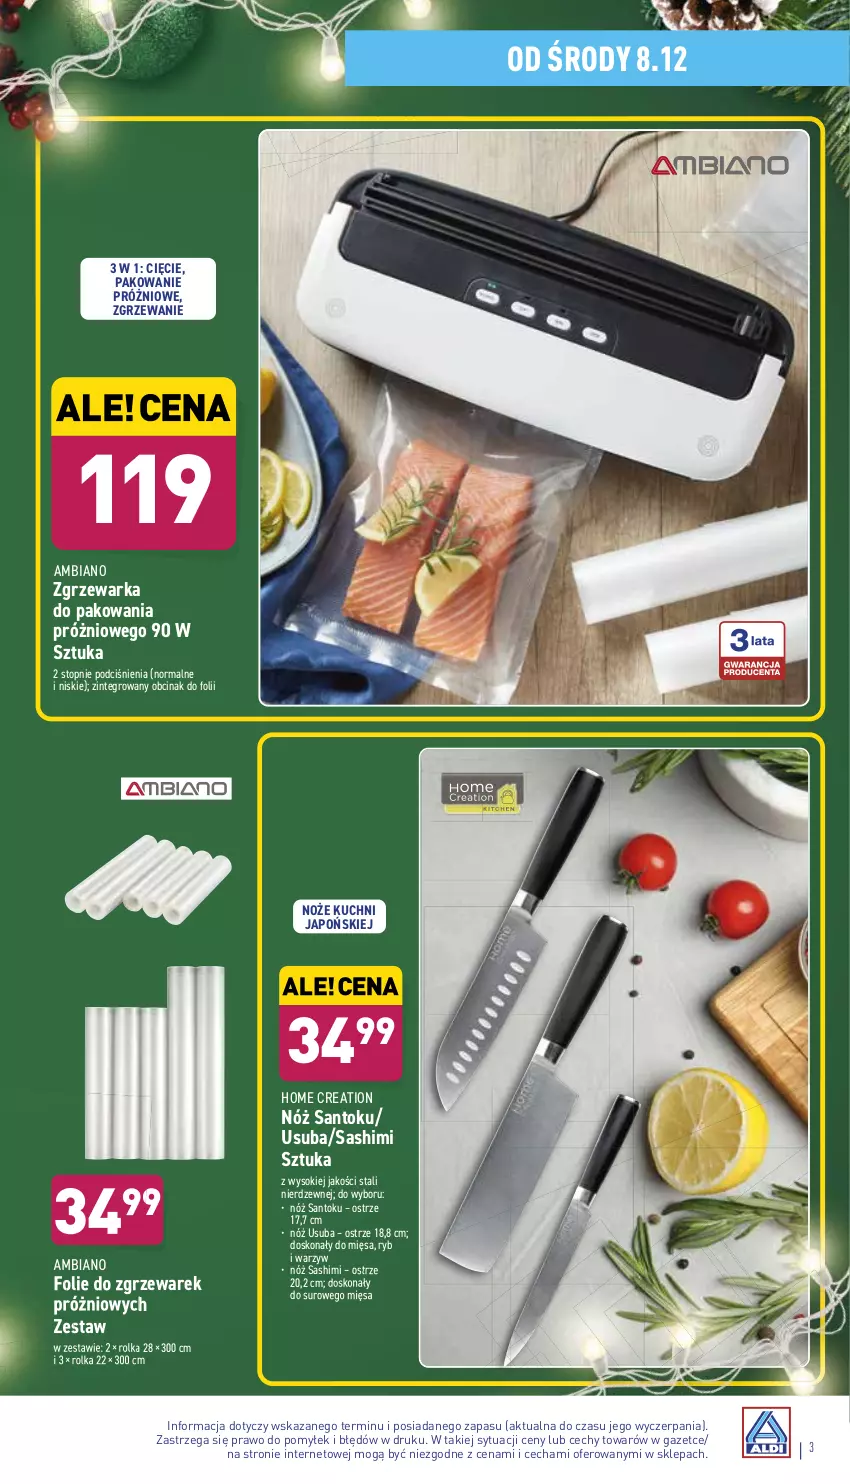 Gazetka promocyjna Aldi - Katalog Moda i Dom - ważna 08.12 do 12.12.2021 - strona 3 - produkty: Noż, Sok, Top, Warka